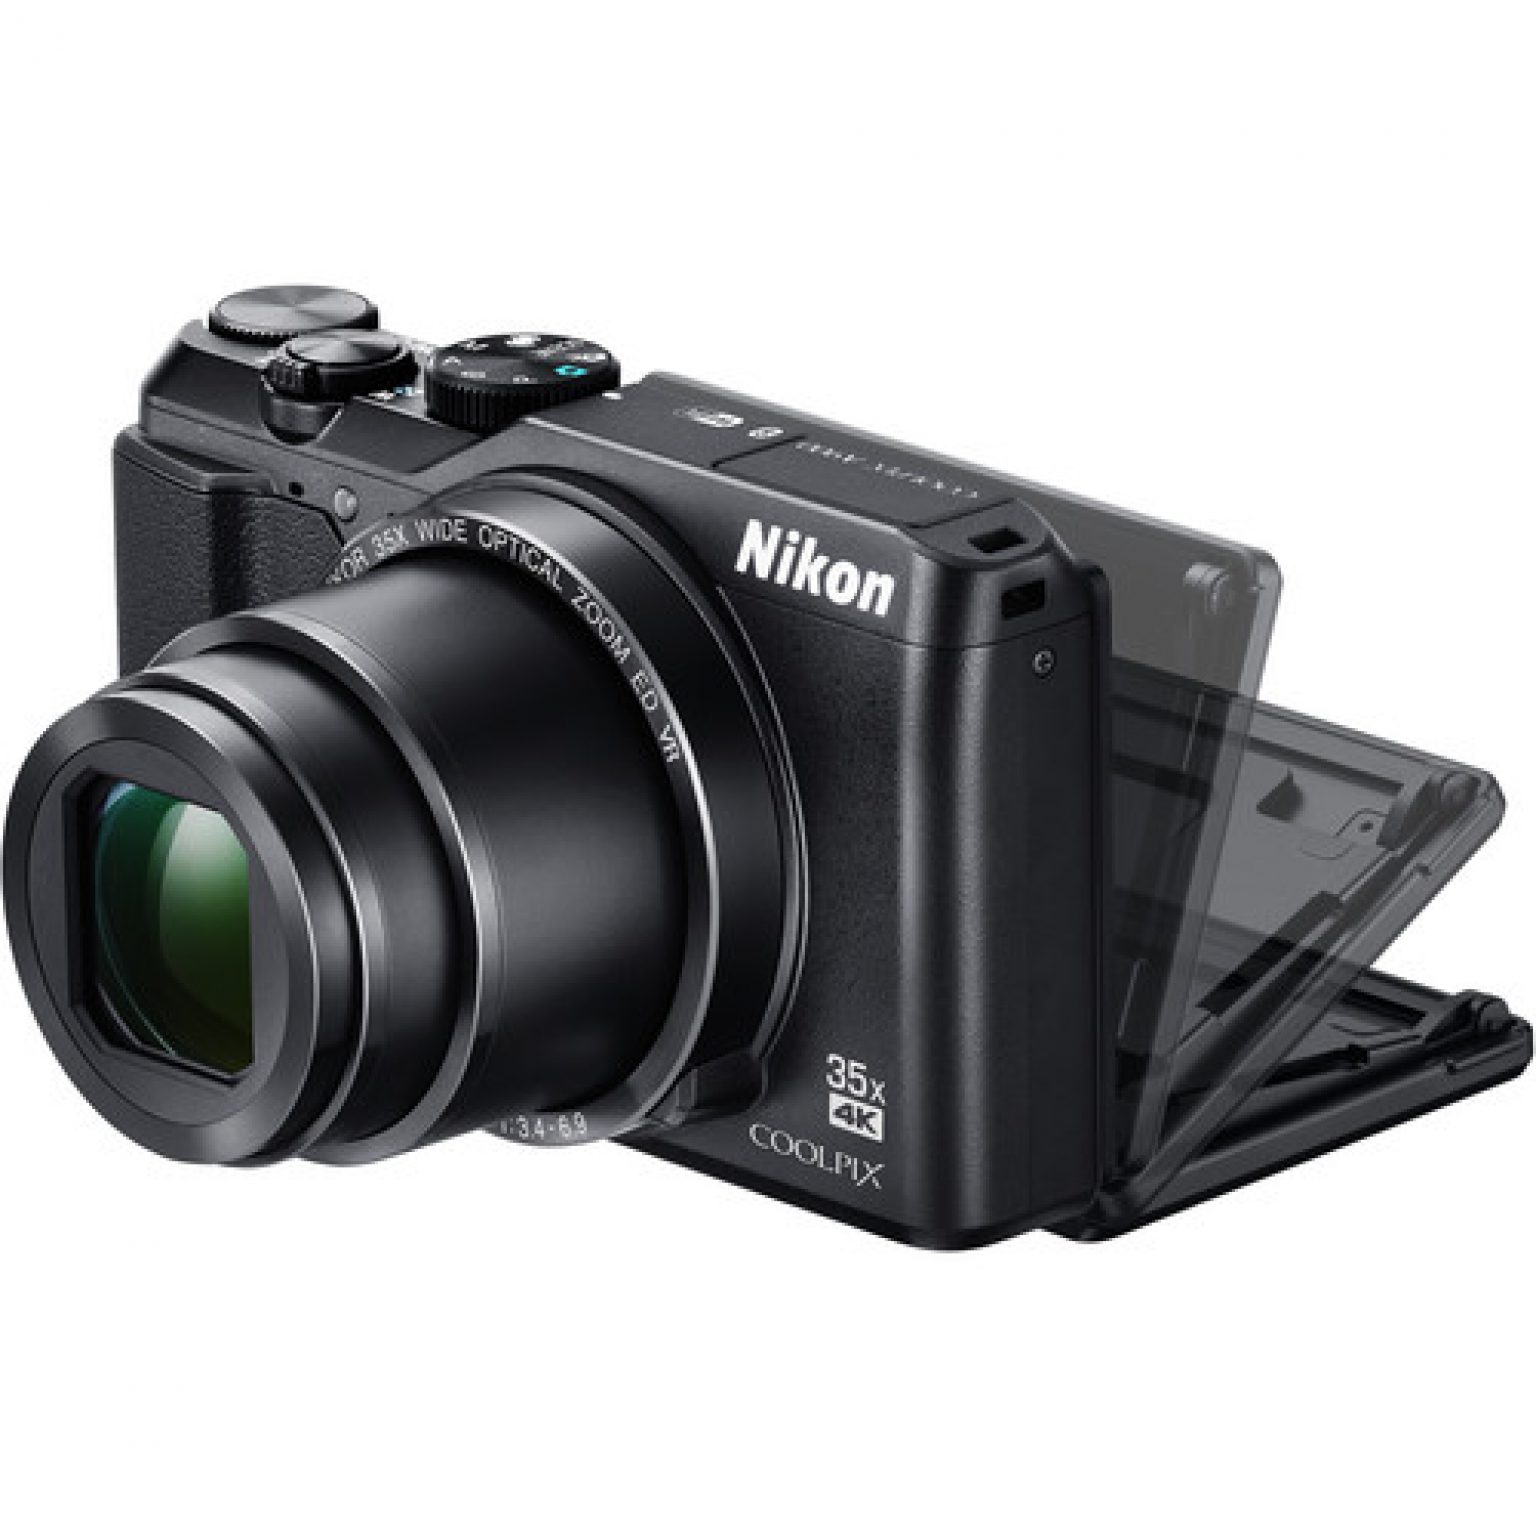 Nikon A900 B 7